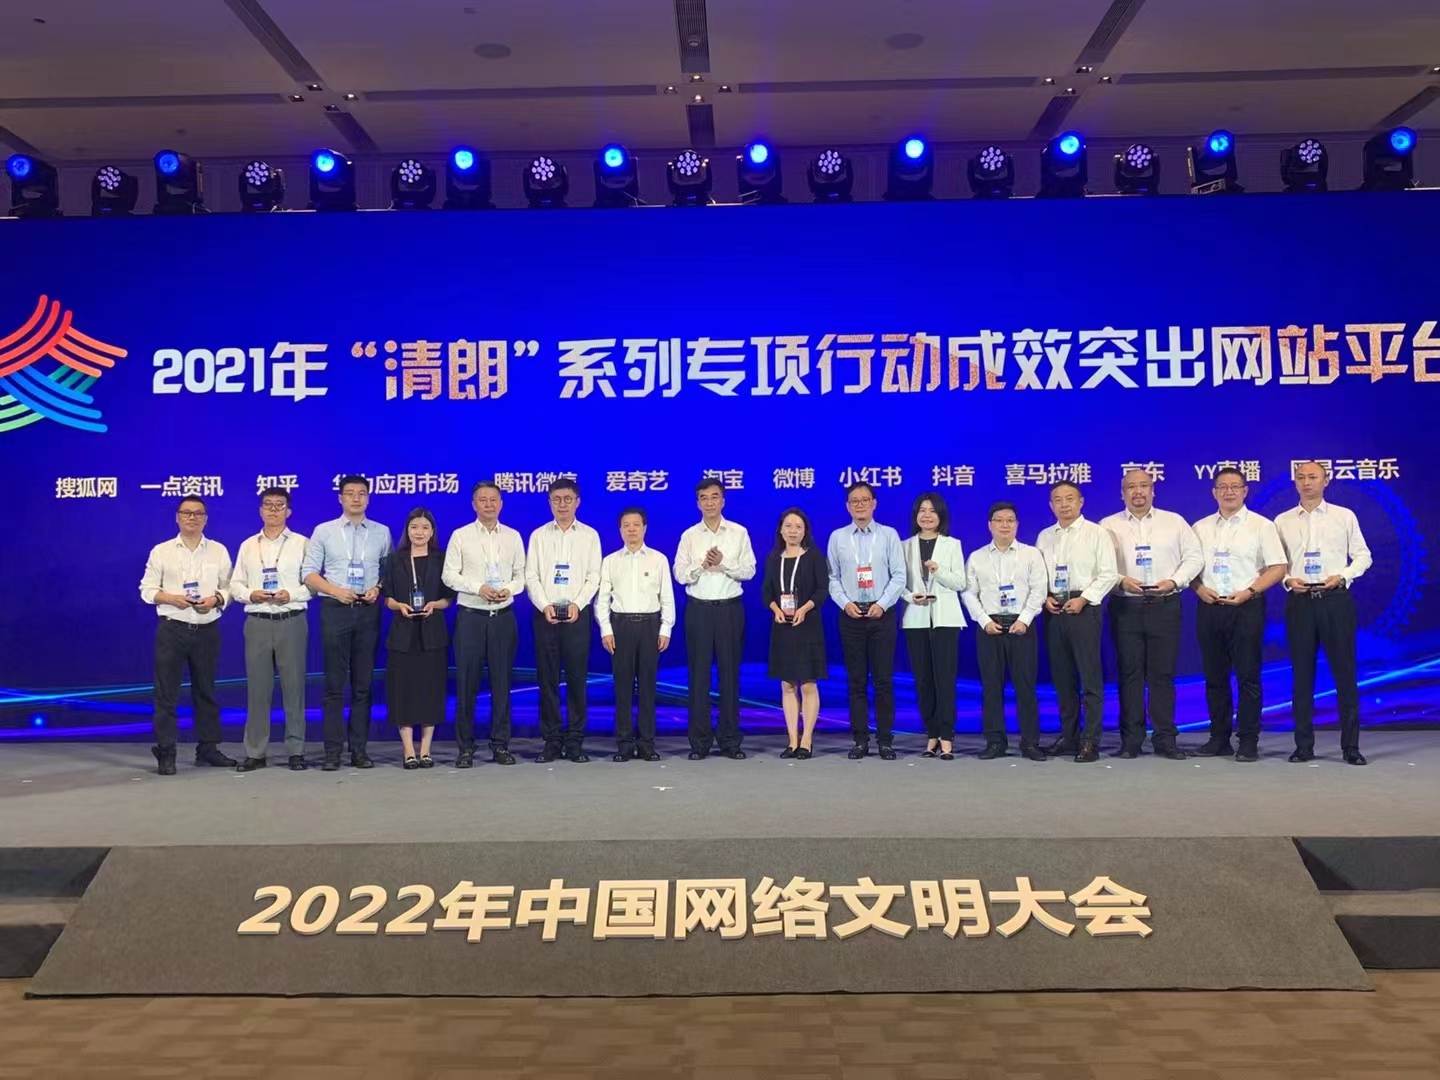 2022年中國網路文明大會網路生態建設論壇